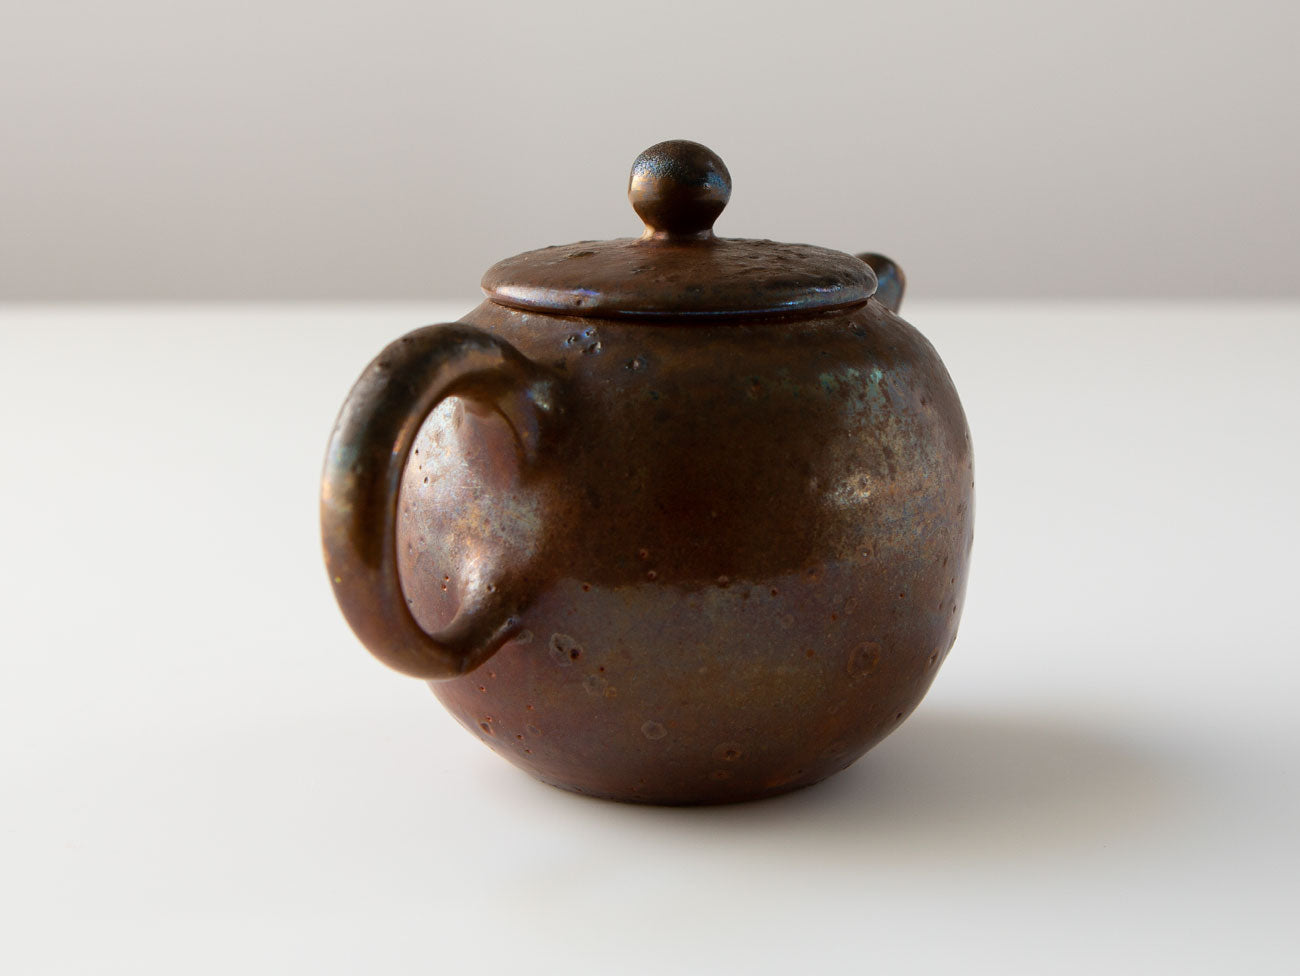 Wood-fired Teapot, Serra, Liao Guo Hua.